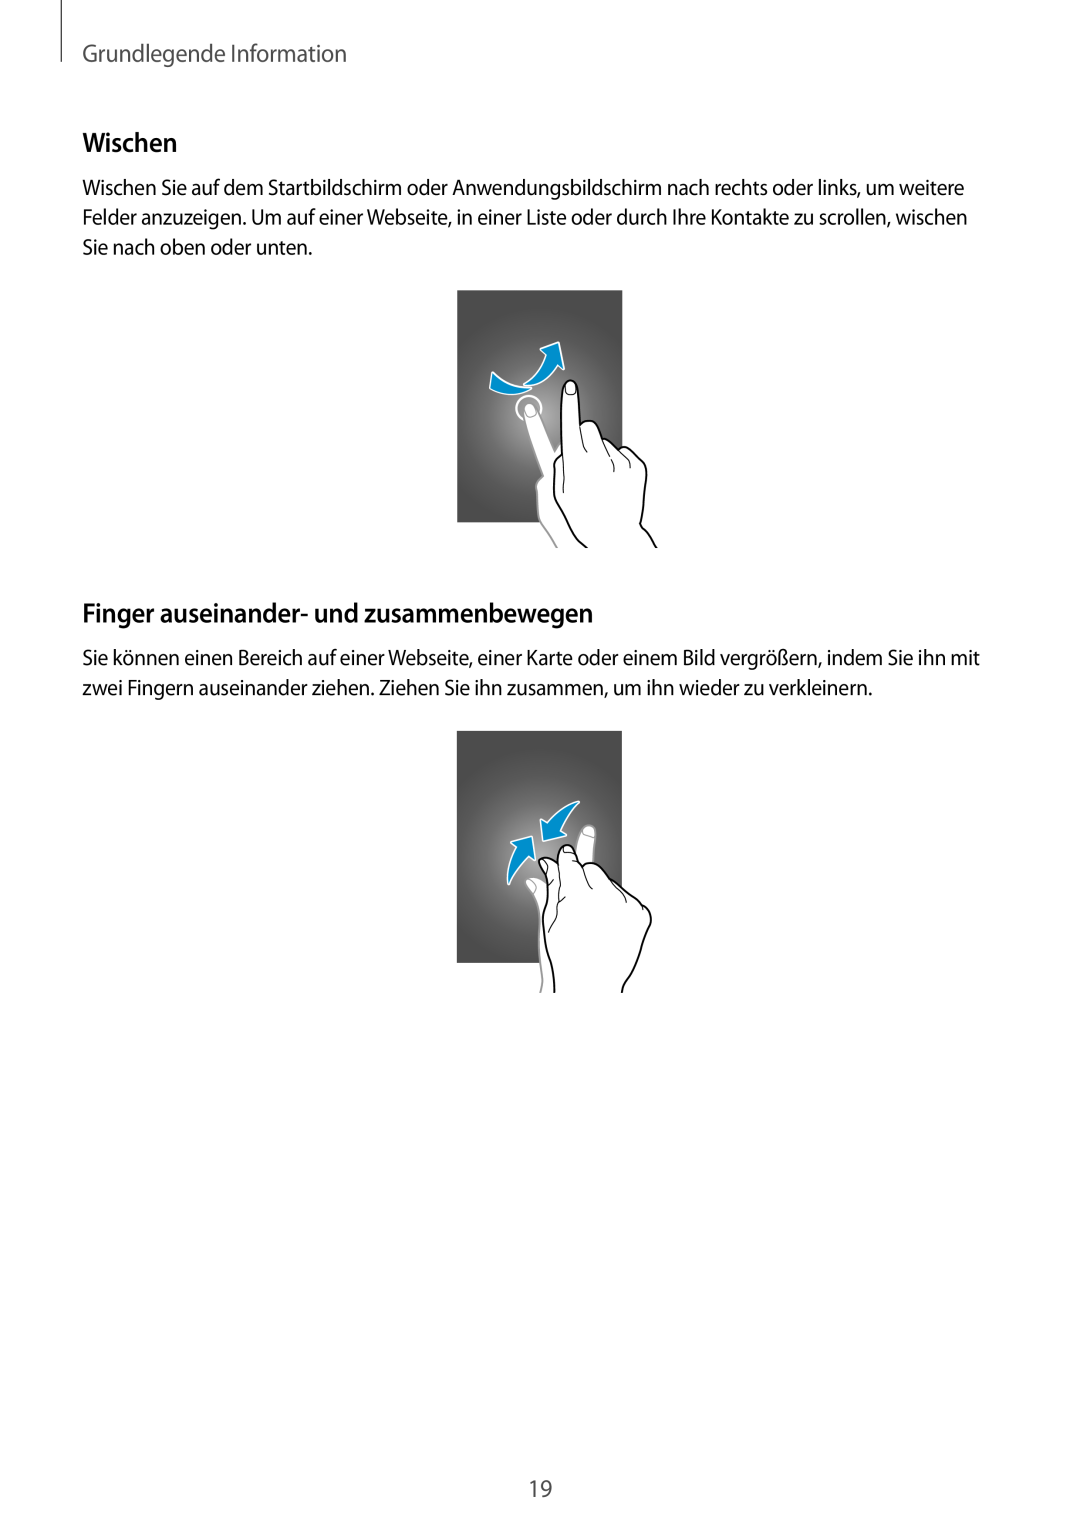 Samsung SM-T110NDWATPH, SM-T110NYKATPH manual Wischen, Finger auseinander- und zusammenbewegen, Grundlegende Information 